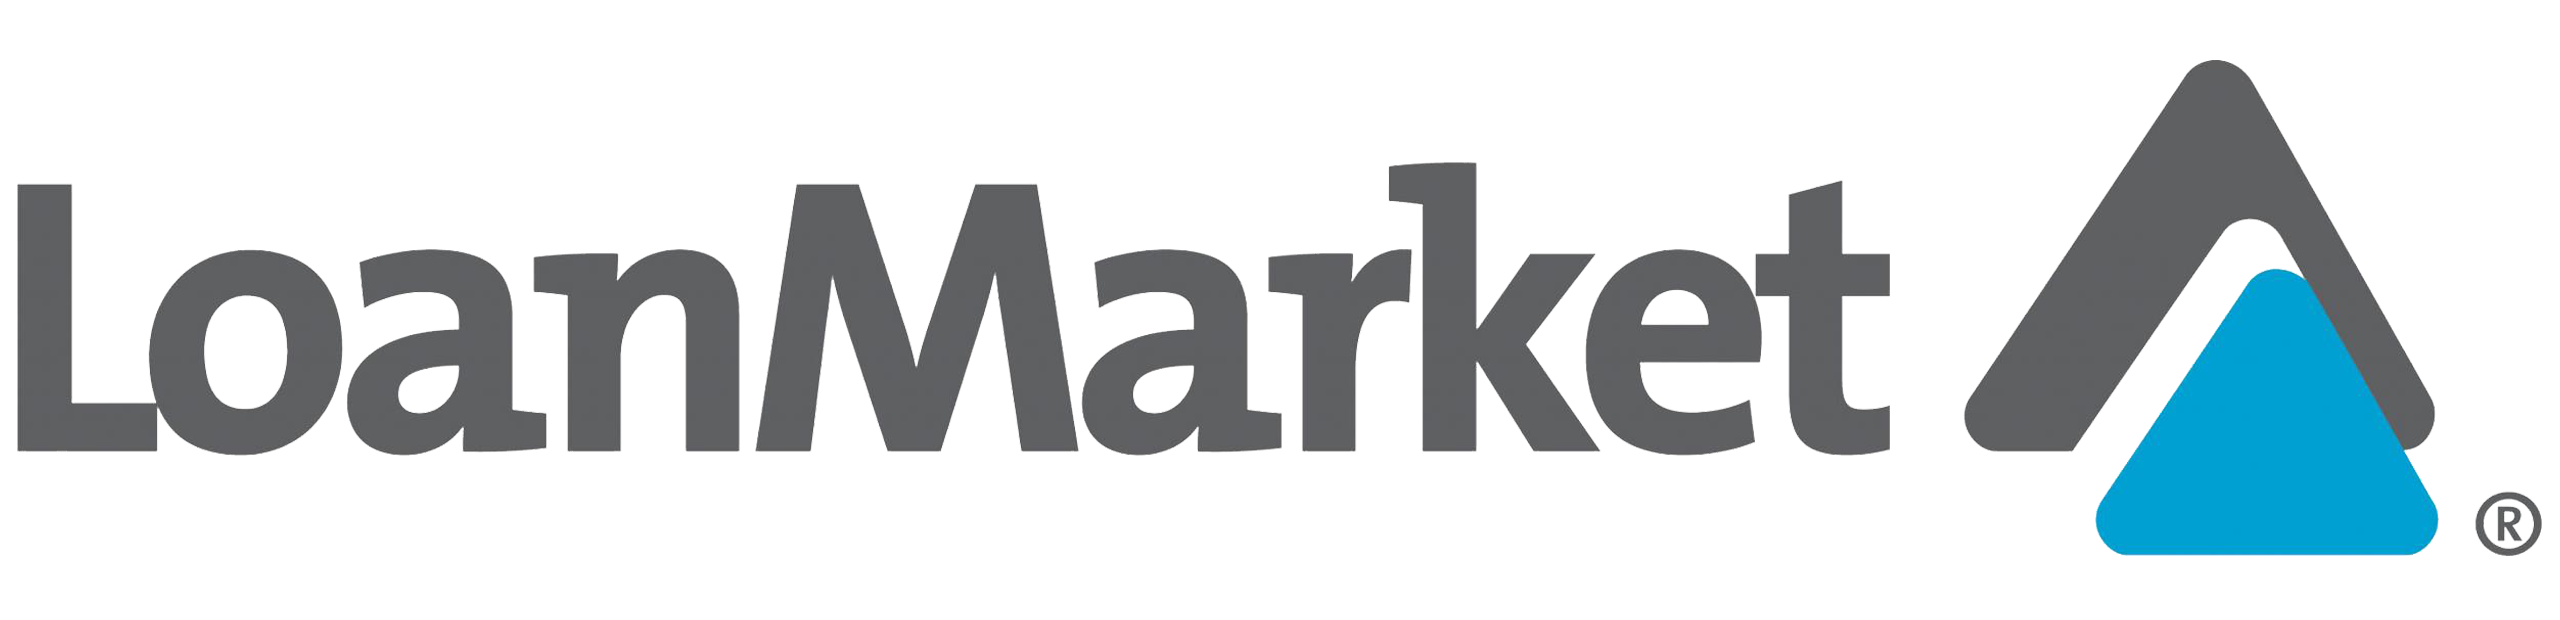 loan-market-logo-lg